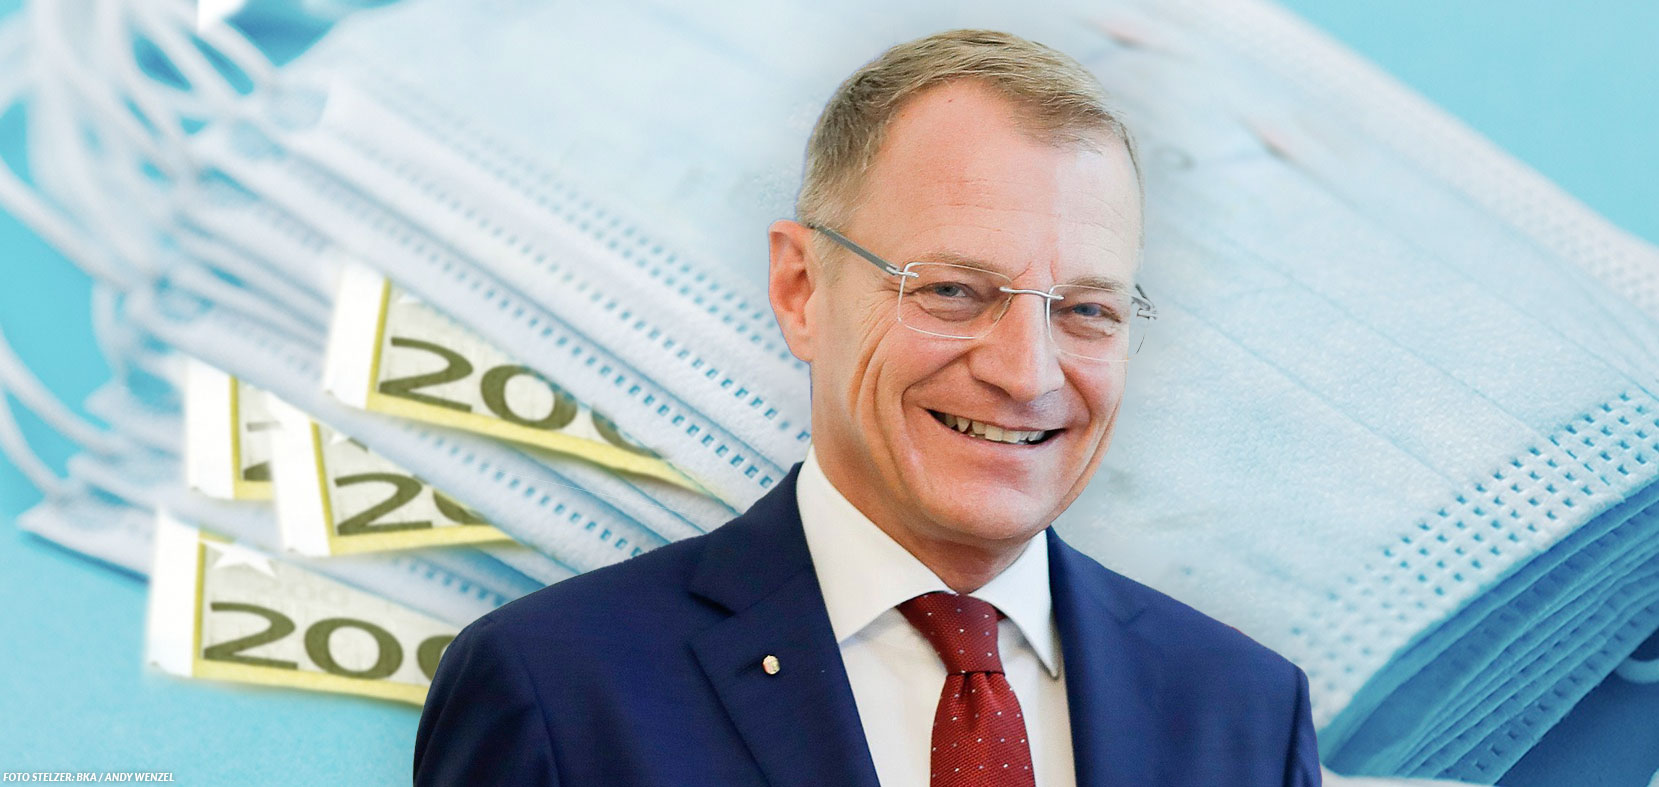 ÖVP-Berater als Corona-Profiteur: Prüfberichte zeigen überteuerten Kauf von Schutz-Ausrüstung